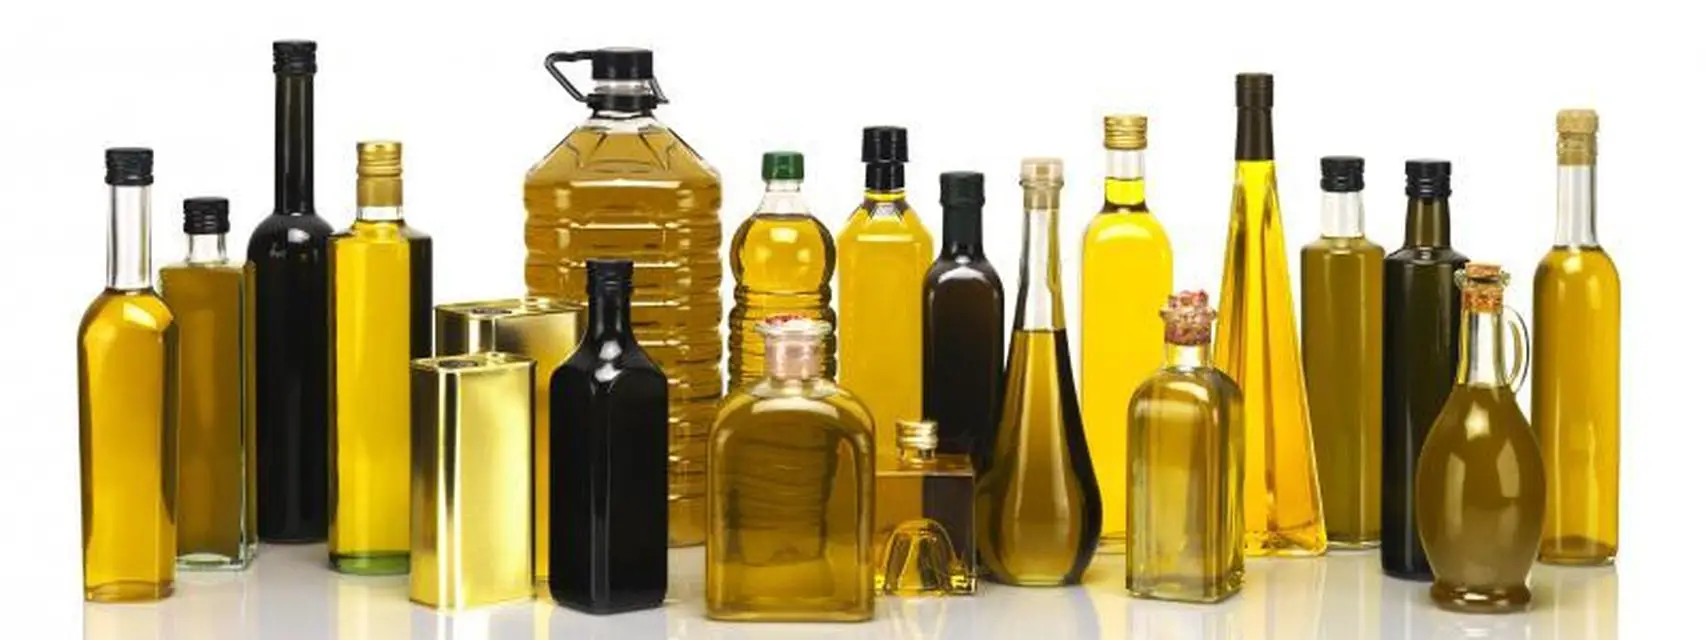 Photo of Alternativas de aceite de oliva con menos grasa y menos calorías